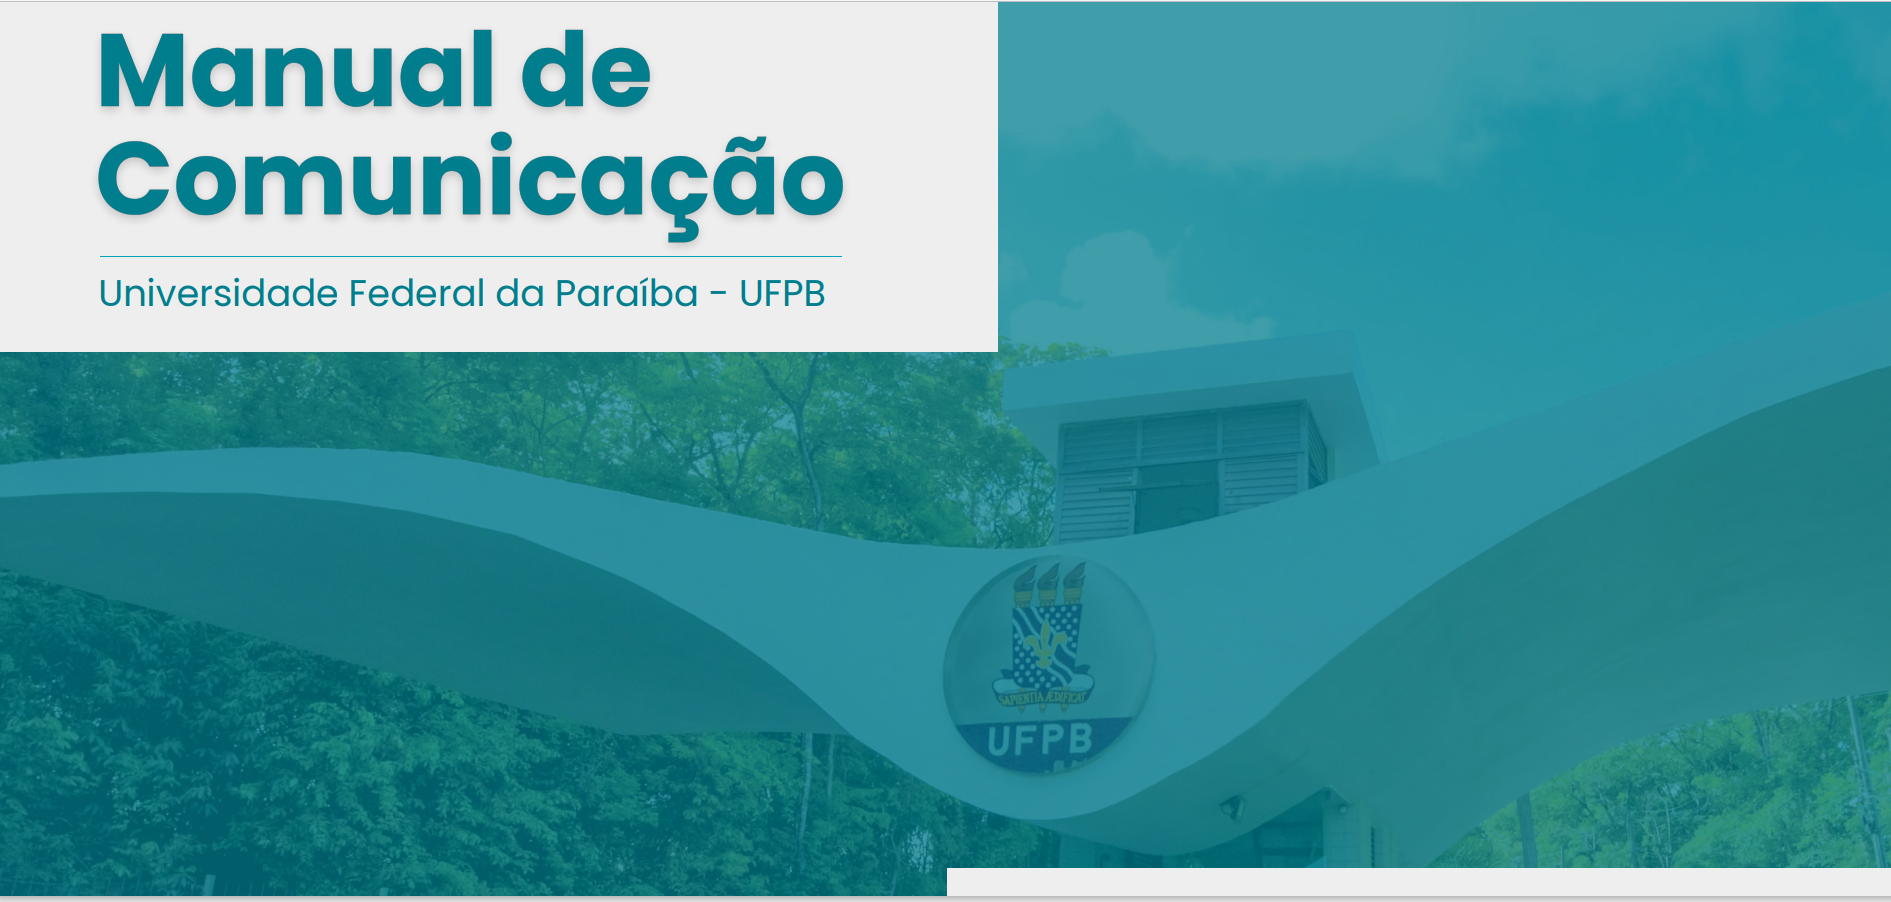 UFPB PUBLICA MANUAL DE COMUNICAÇÃO